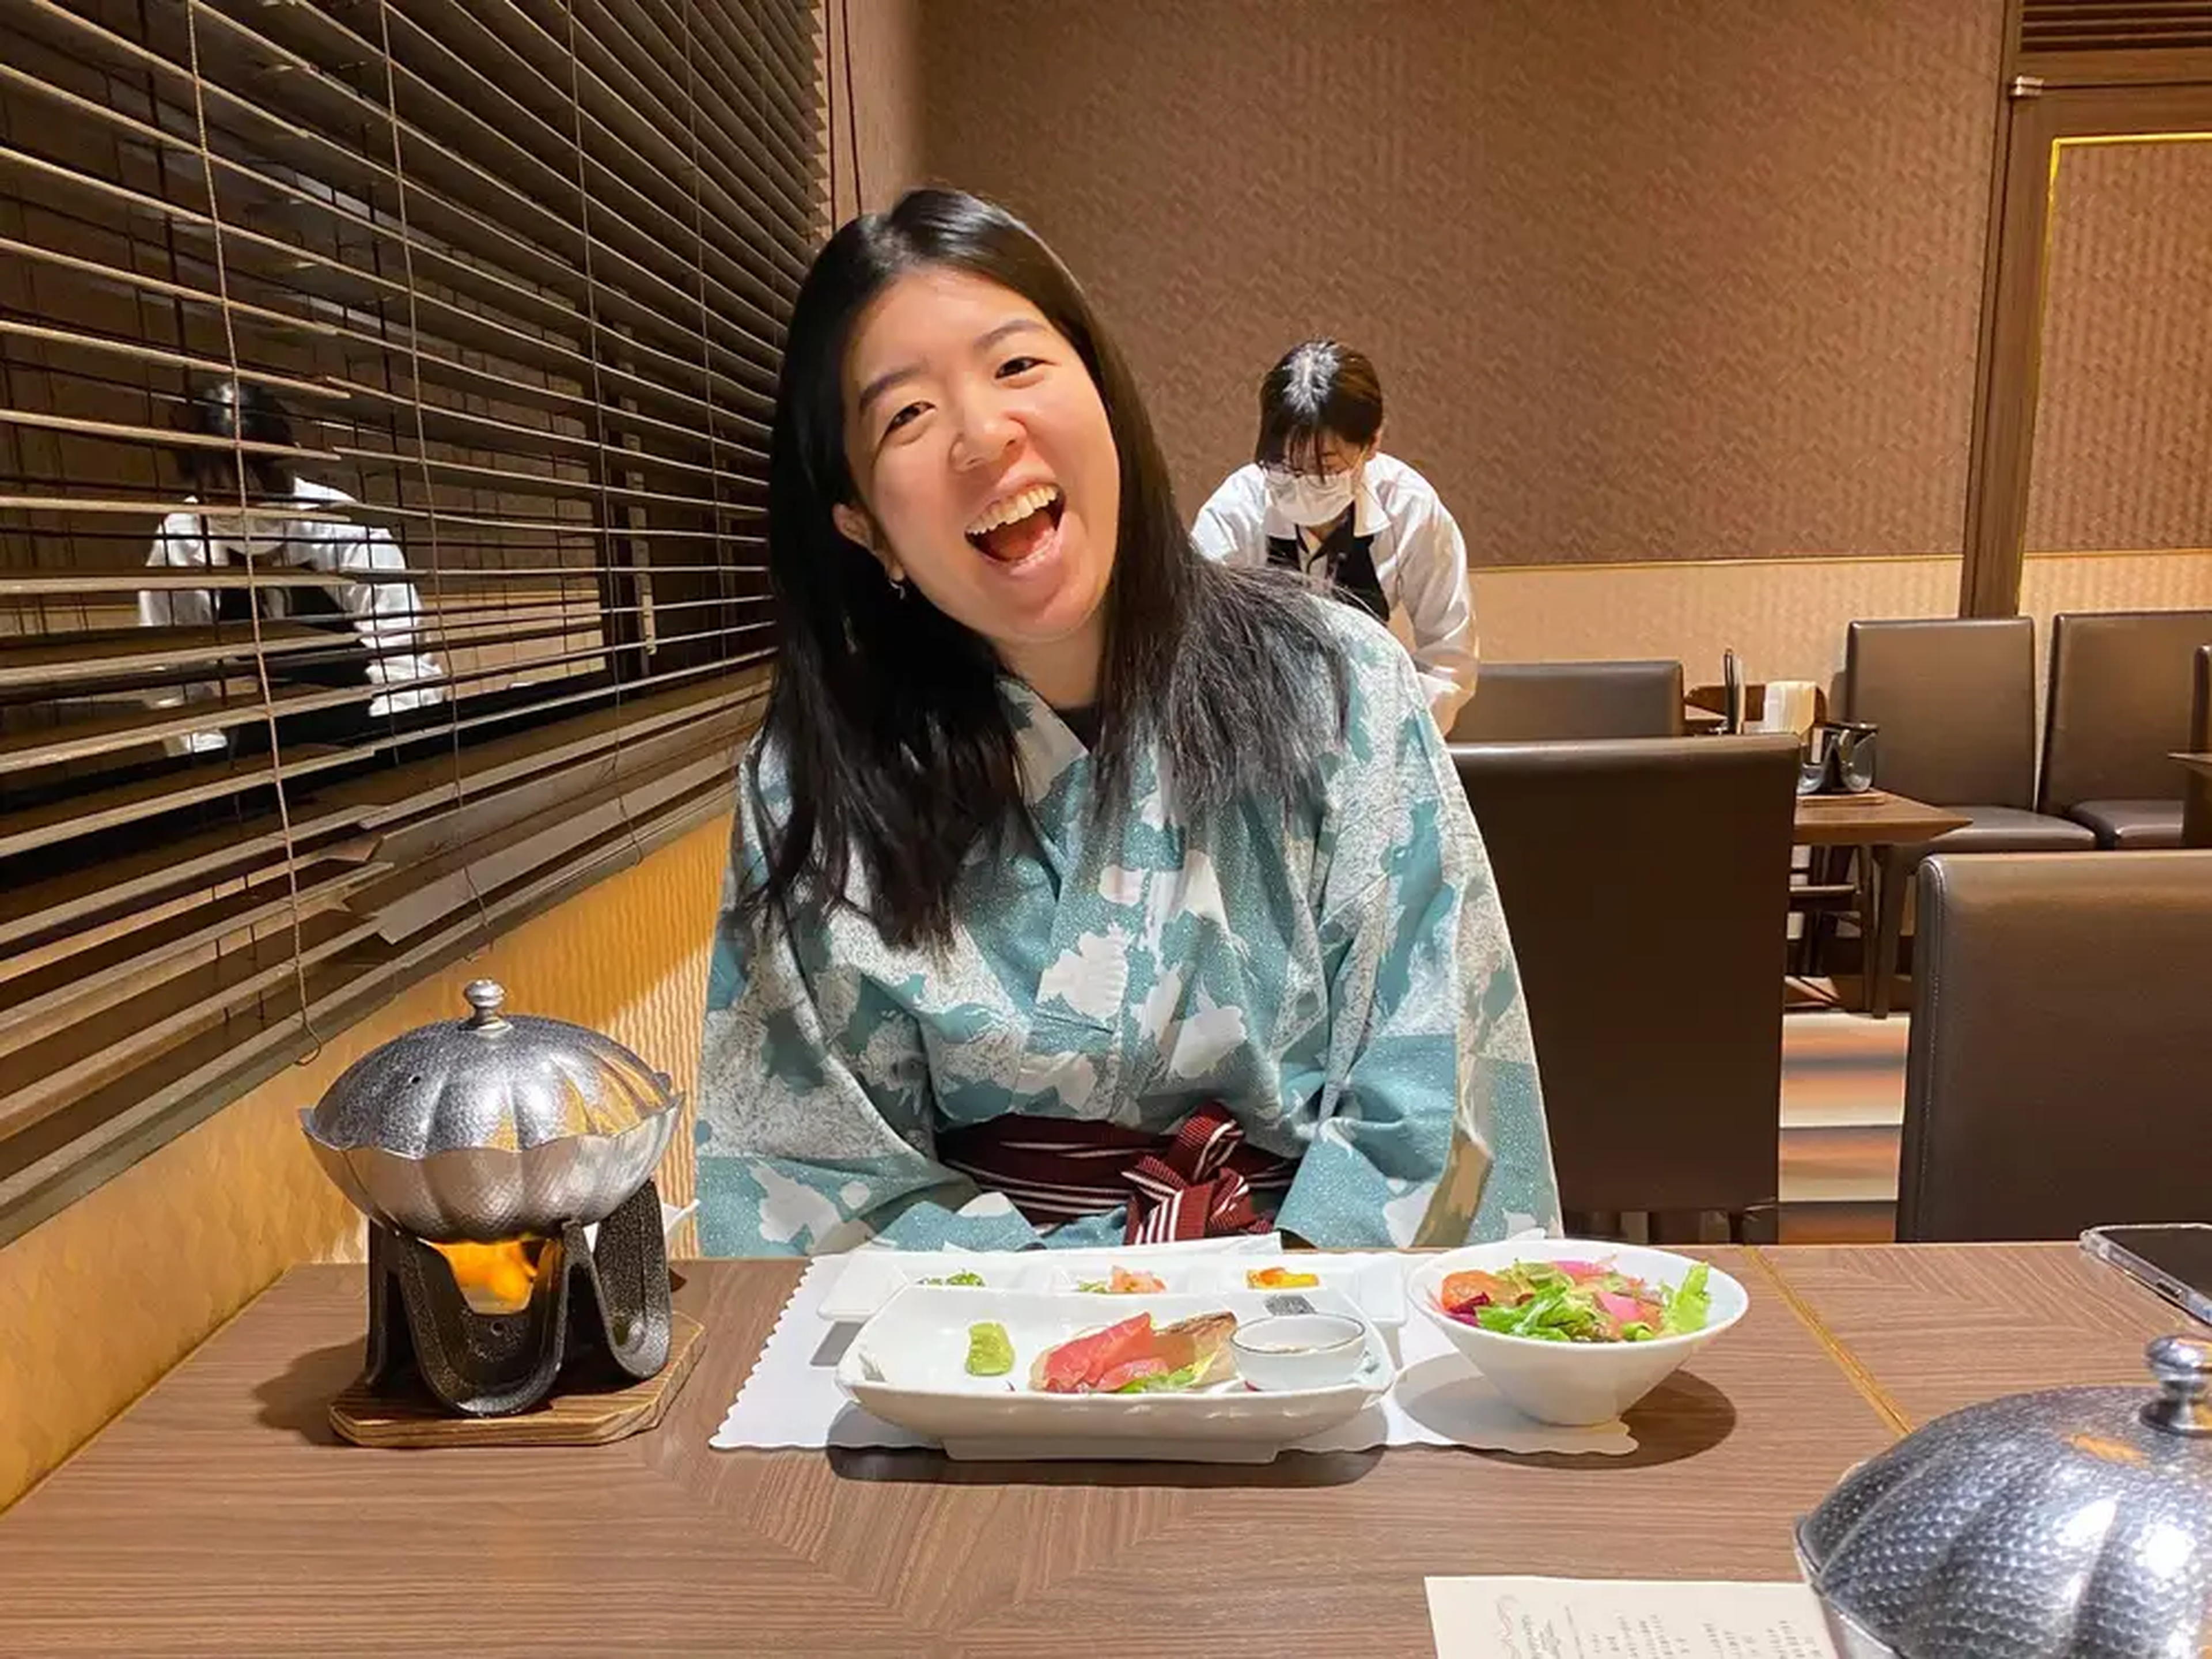 La autora disfruta mucho de la gastronomía japonesa.